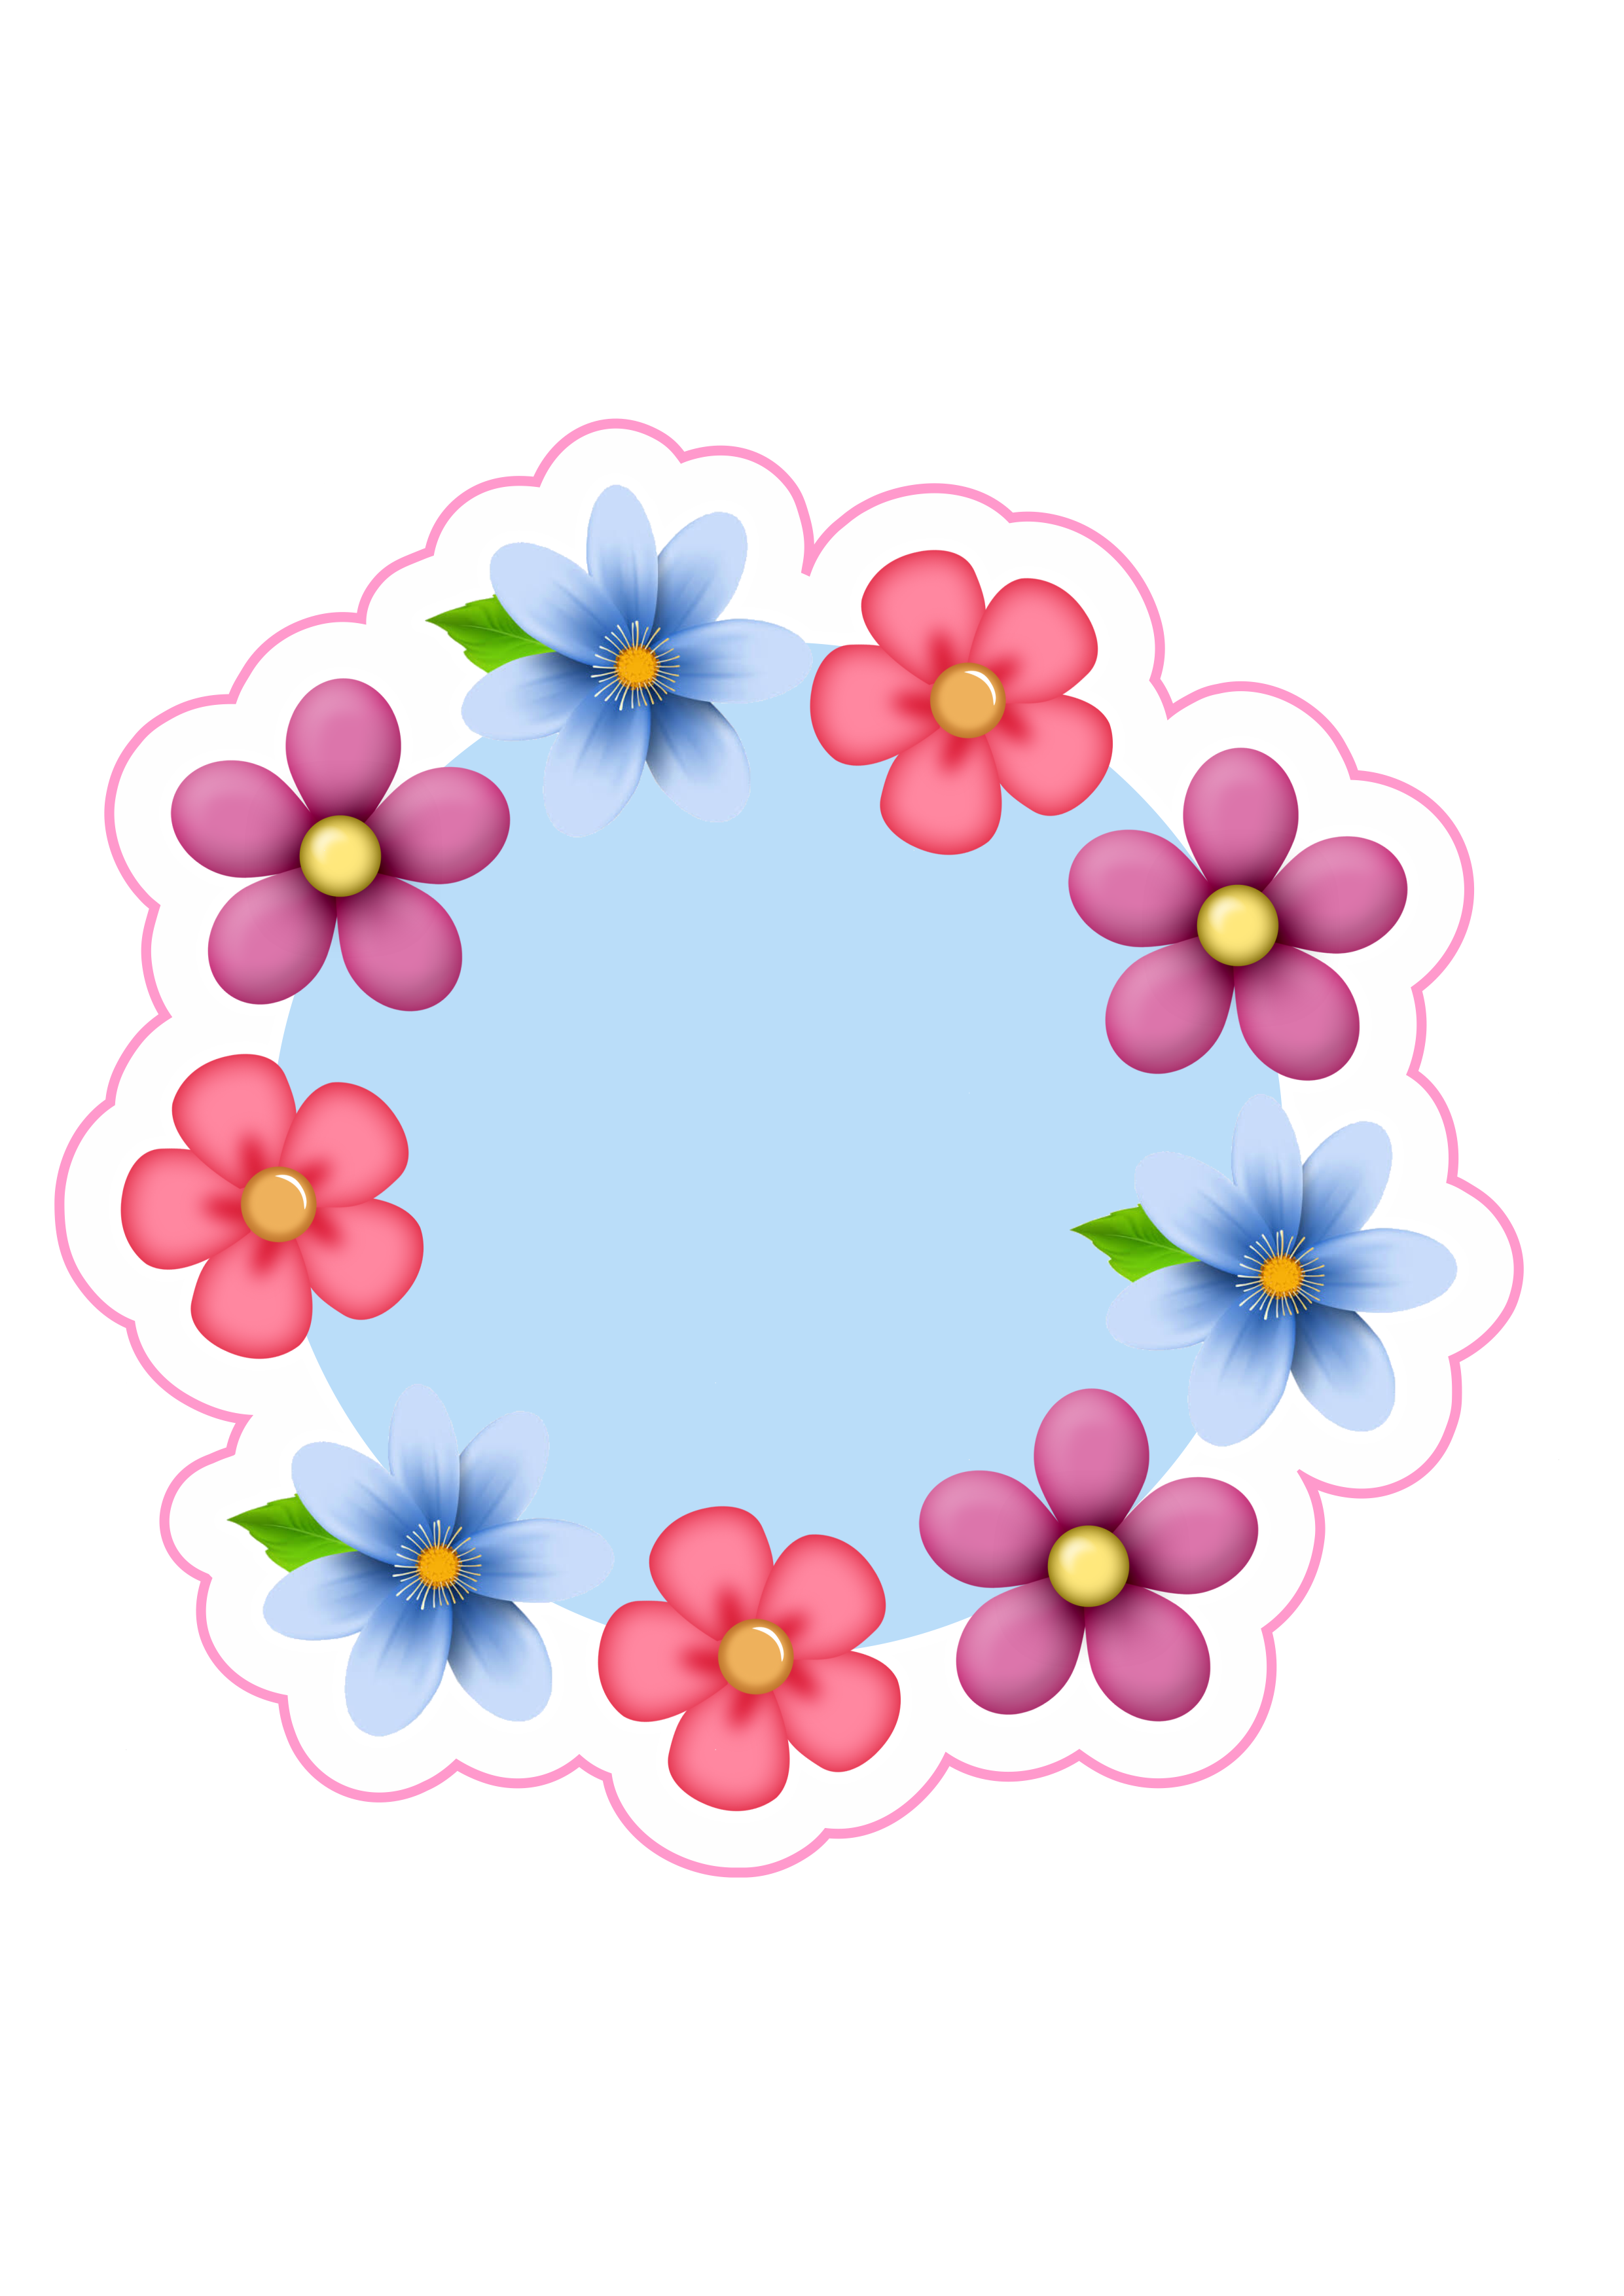 Circulo azul com rosas para decoração png